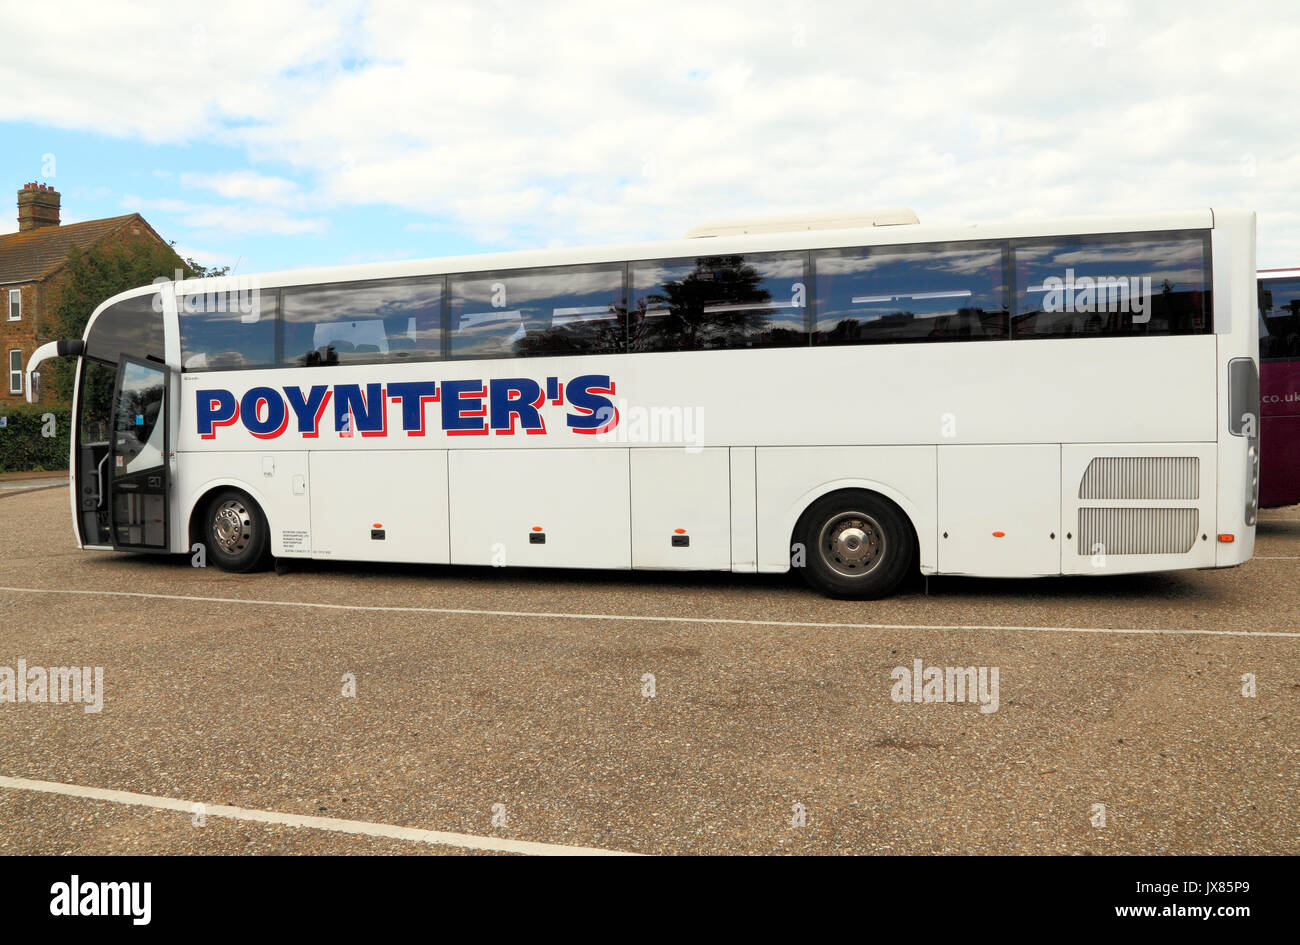 Les entraîneurs du Poynter, coach, excursions, excursions, excursion, excursions, vacances, transports, England, UK Banque D'Images